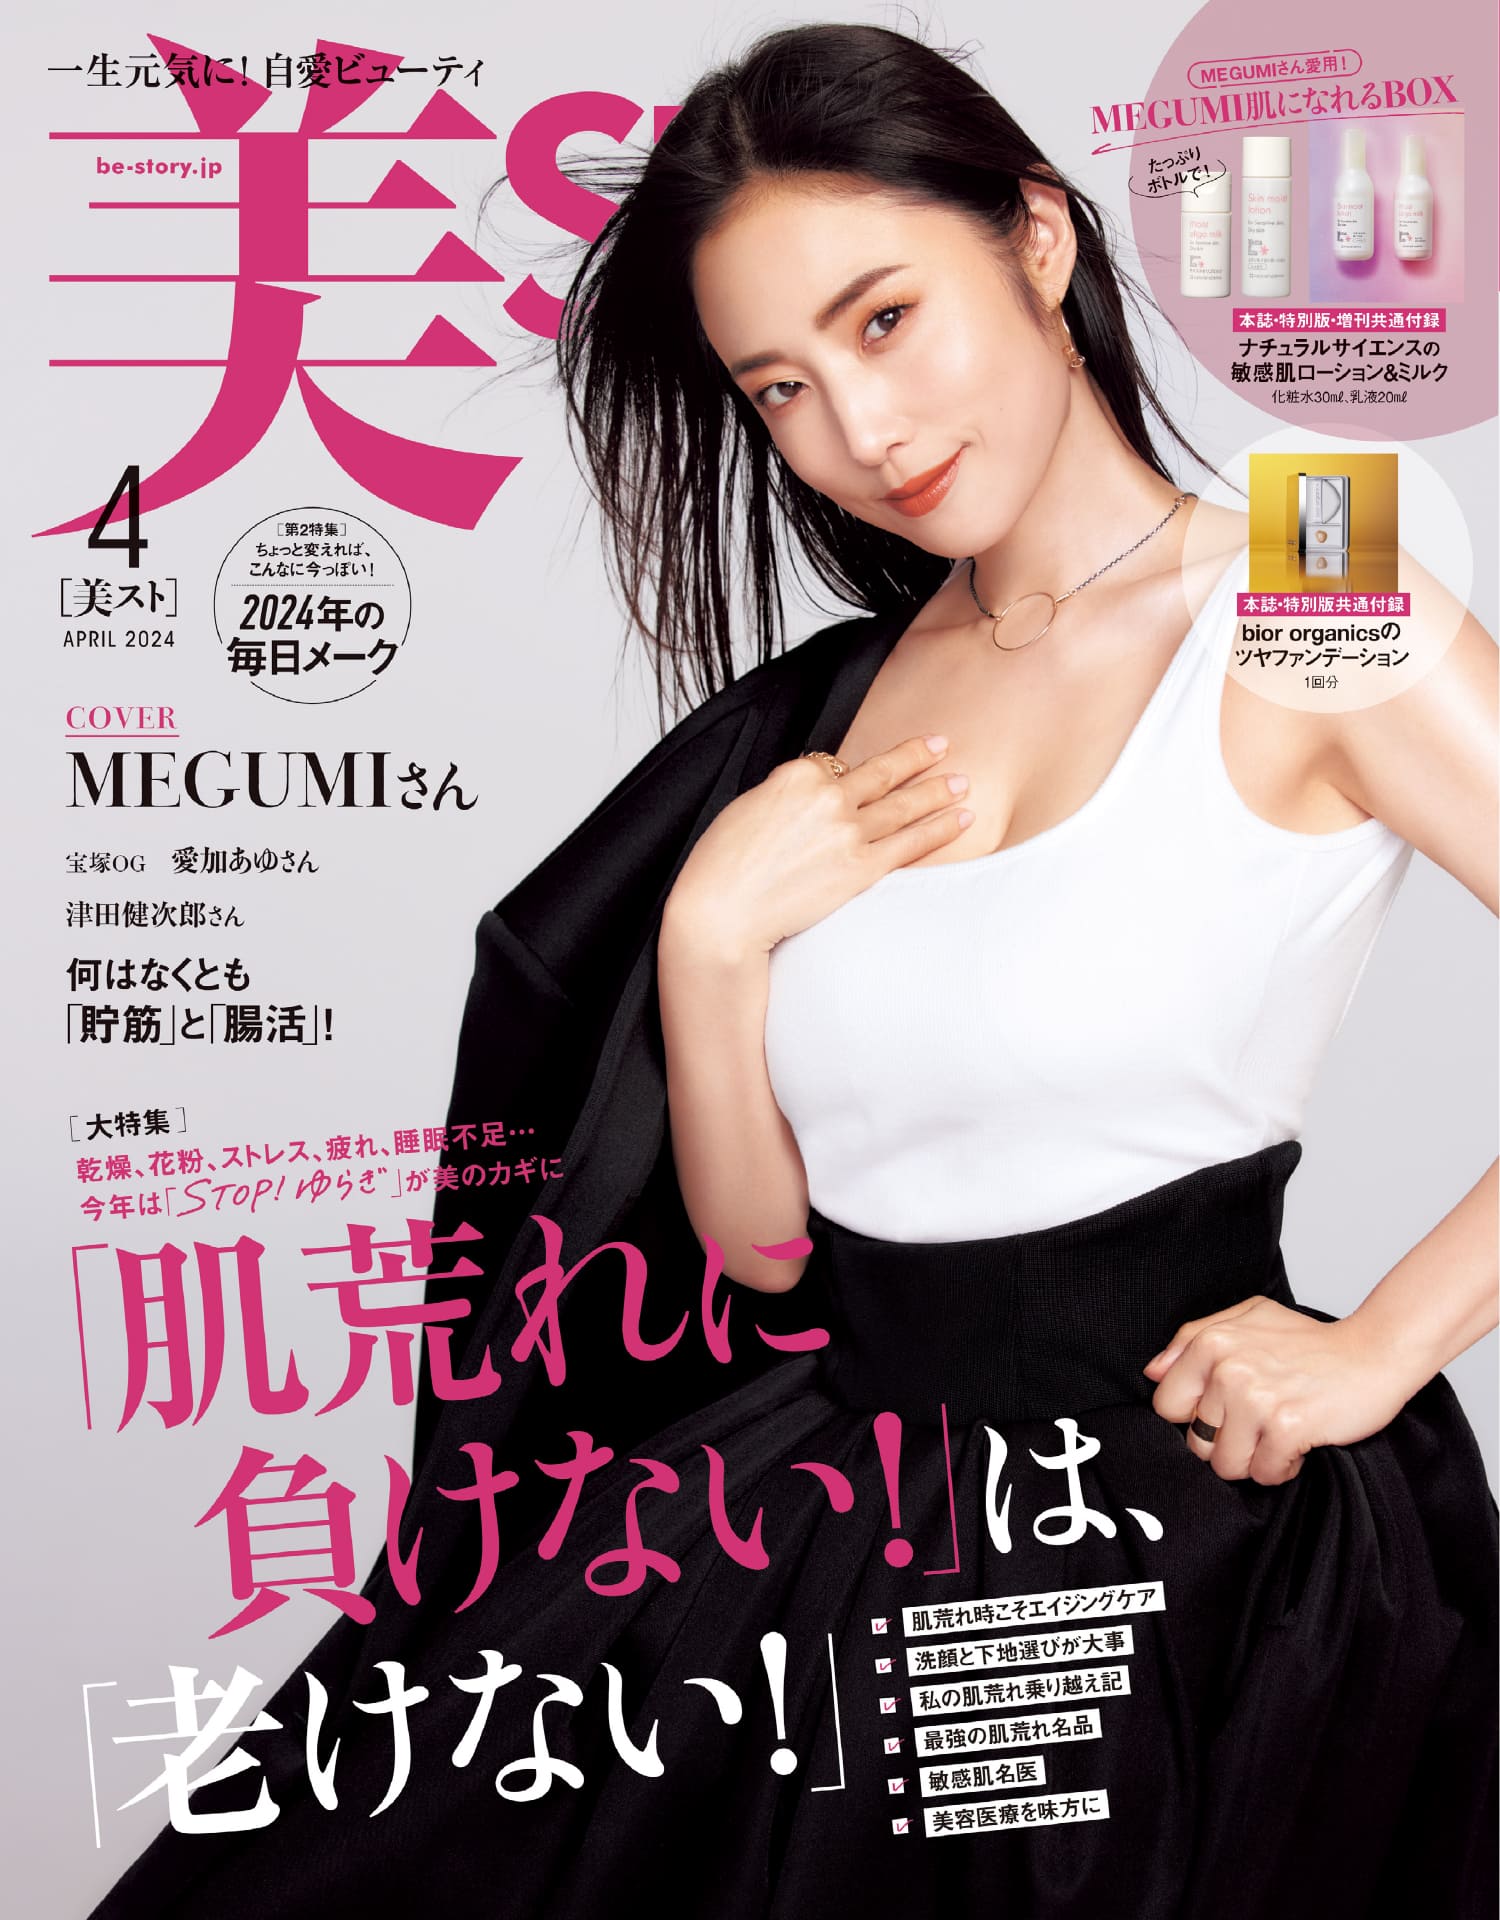 KNOW YOUR ORIGIN、コントアクリニック東京での「Beauty Charge -Femcare-」販売開始のお知らせ